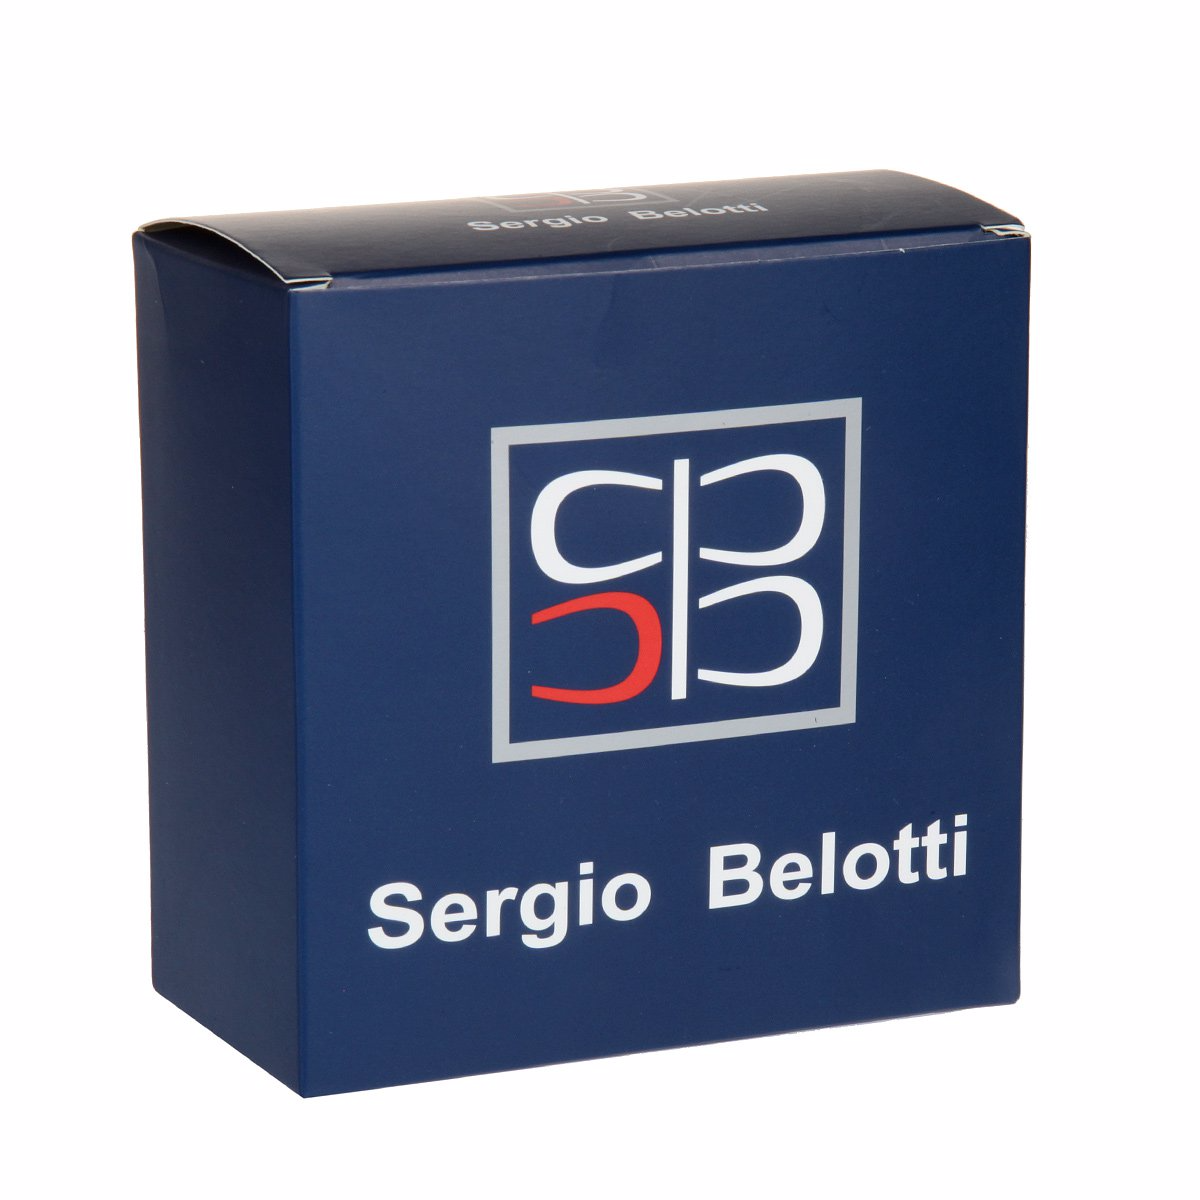 Ремень
Sergio Belotti
2035/40 Beige Ремни и пояса